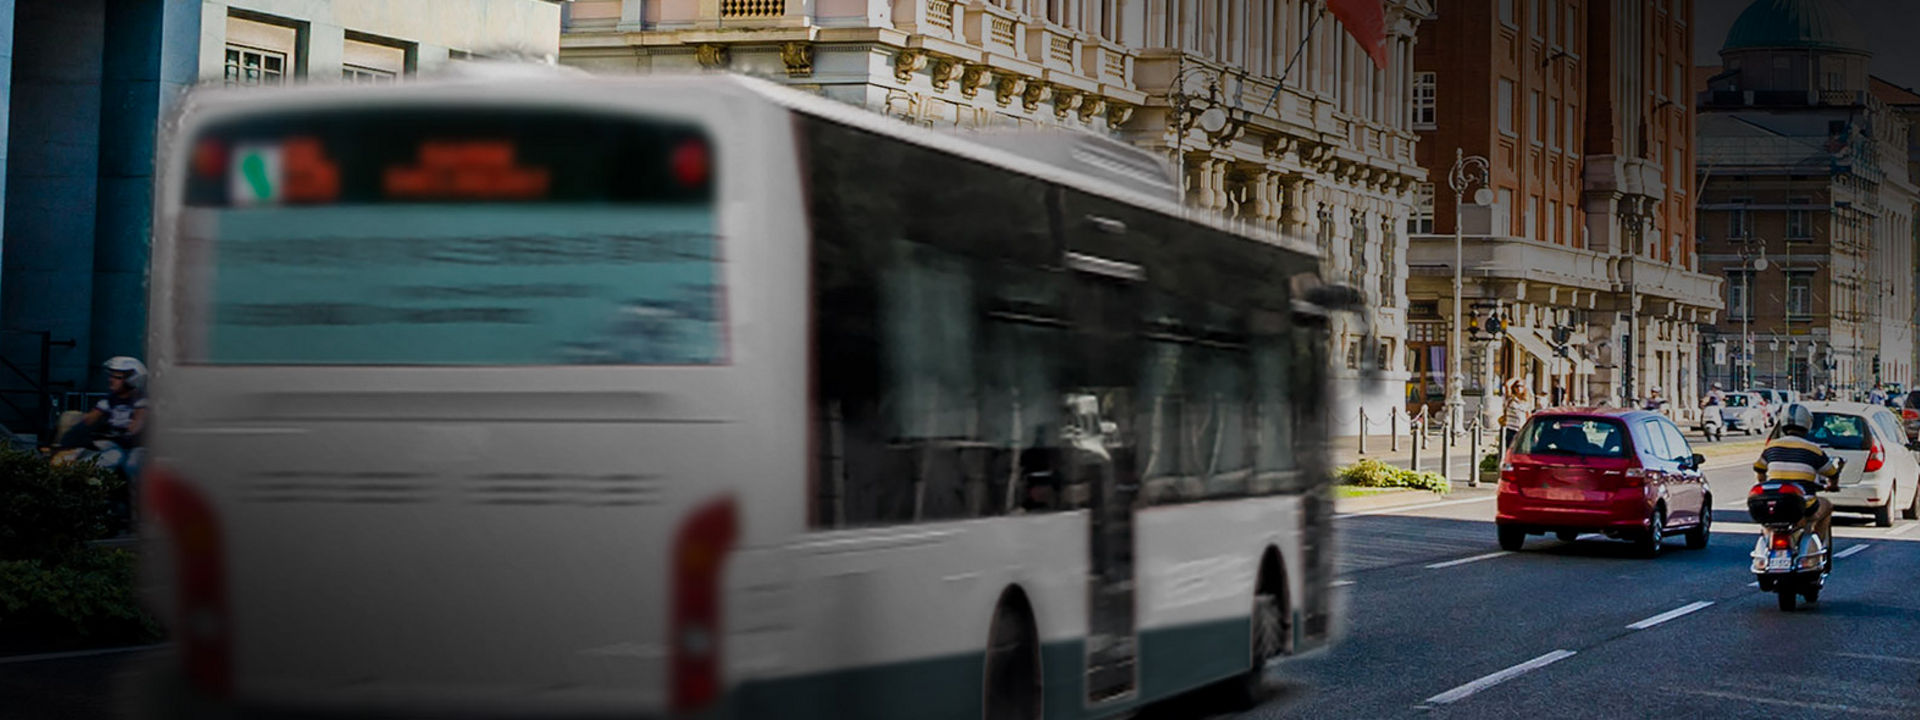 Na sliki je zadnji del mestnega avtobusa z Bridgestonovimi pnevmatikami za mestne avtobus med vožnjo po središču mesta.